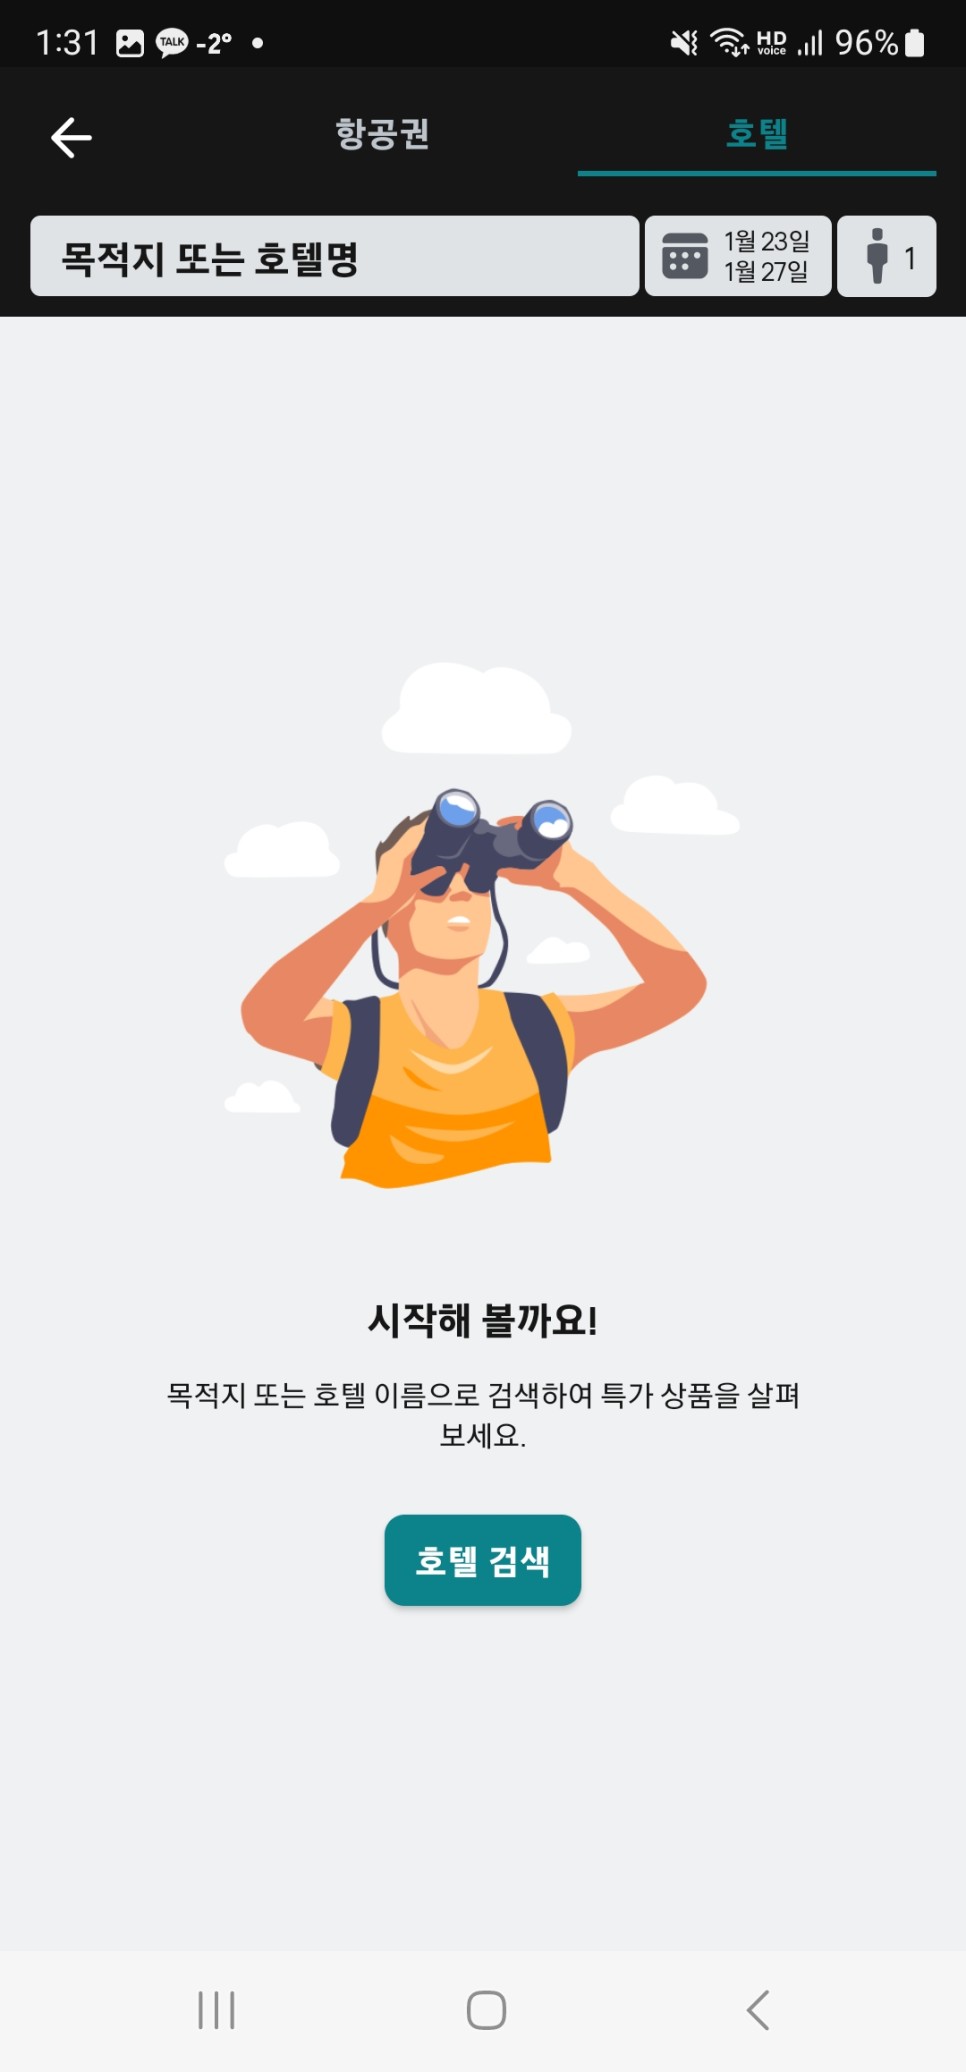 사이판 호텔 하얏트 리젠시 추천 여름휴양지 사이판 항공권 준비